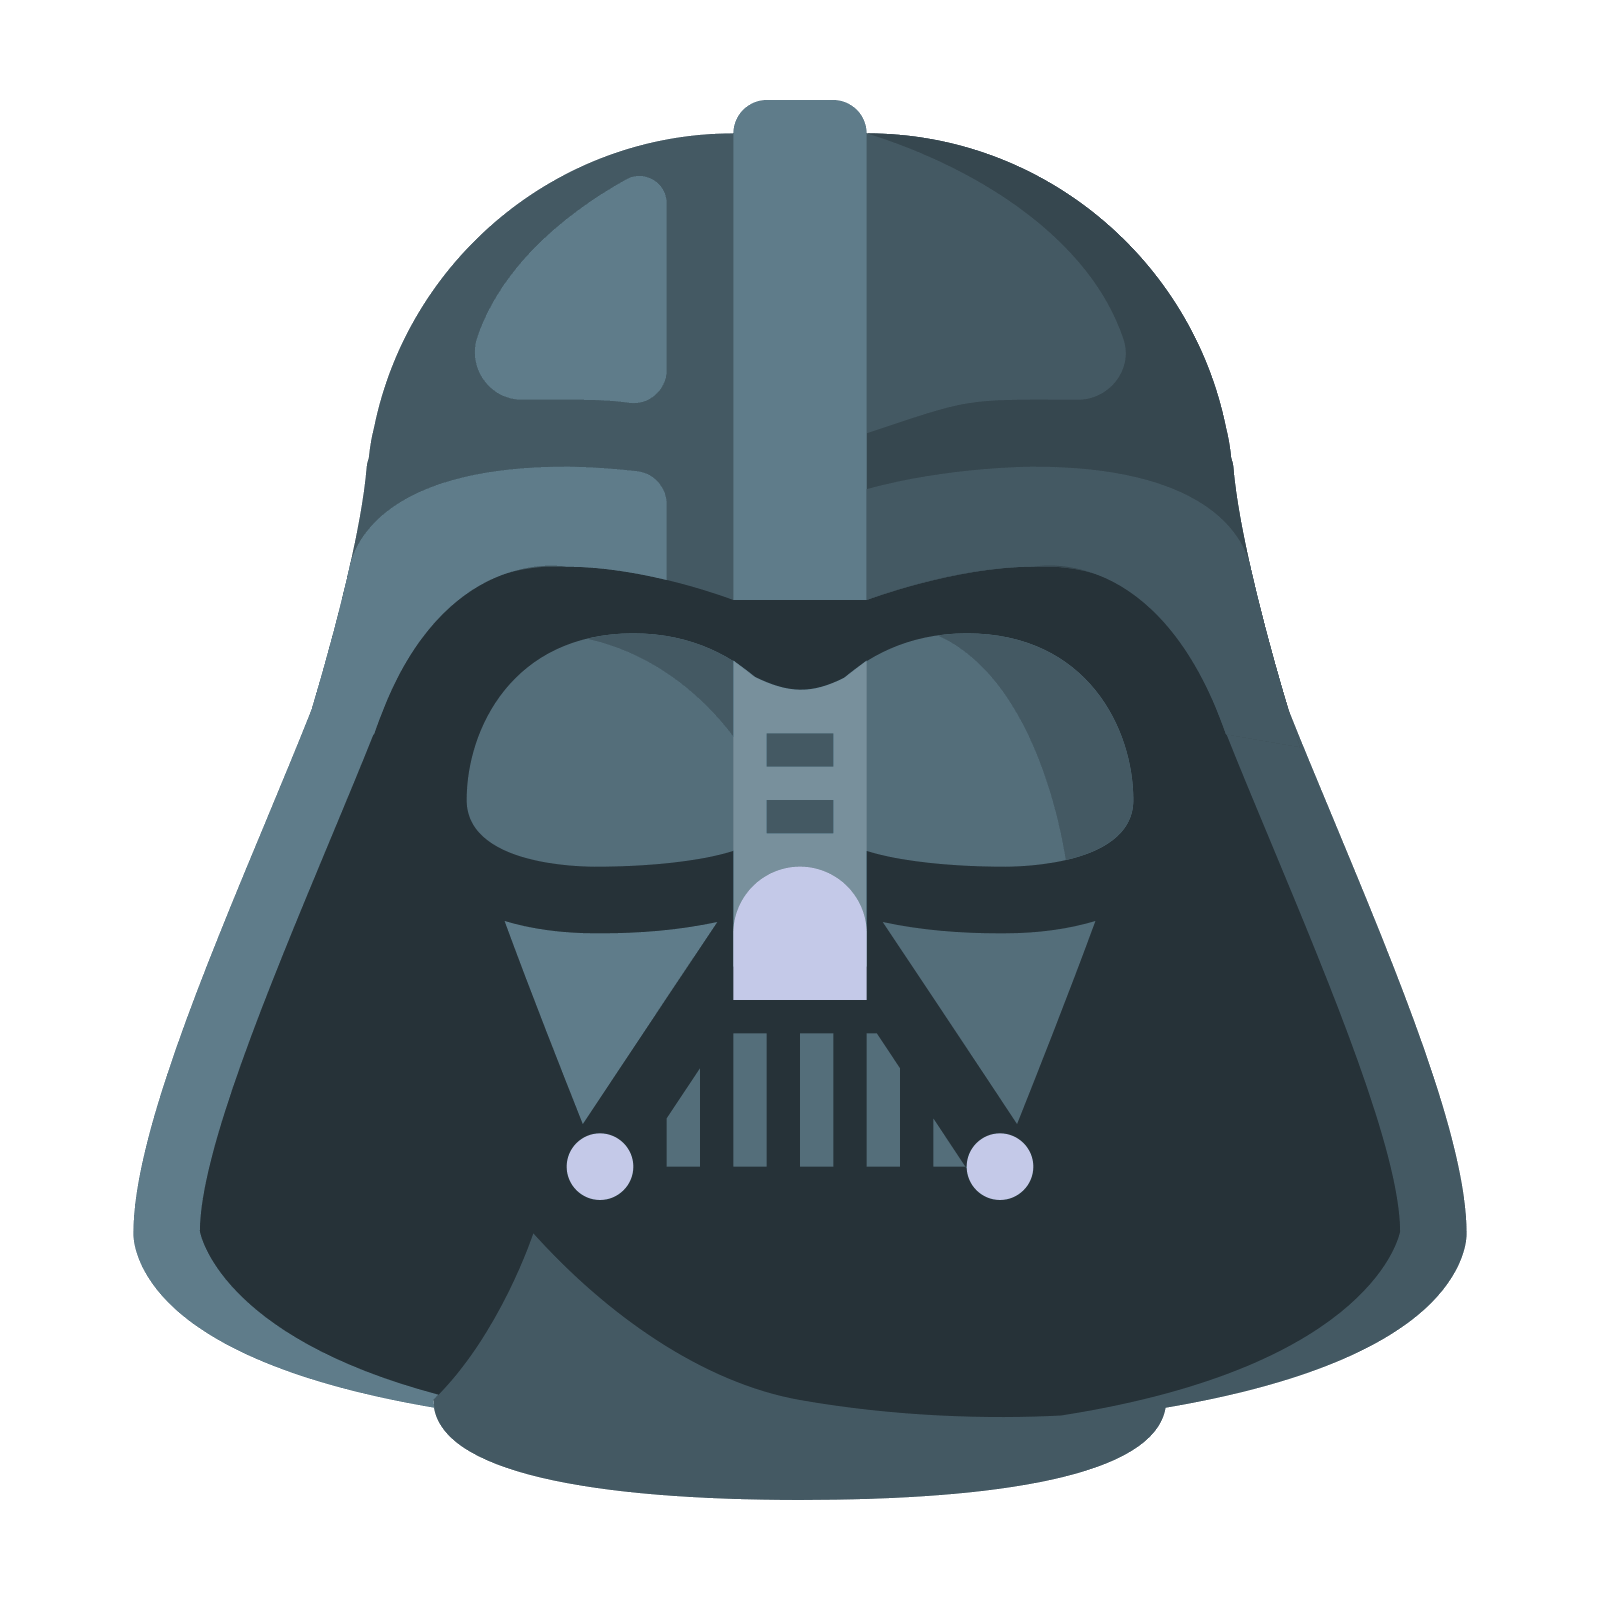 Download PNG image - Darth Vader Helmet PNG Free Download 